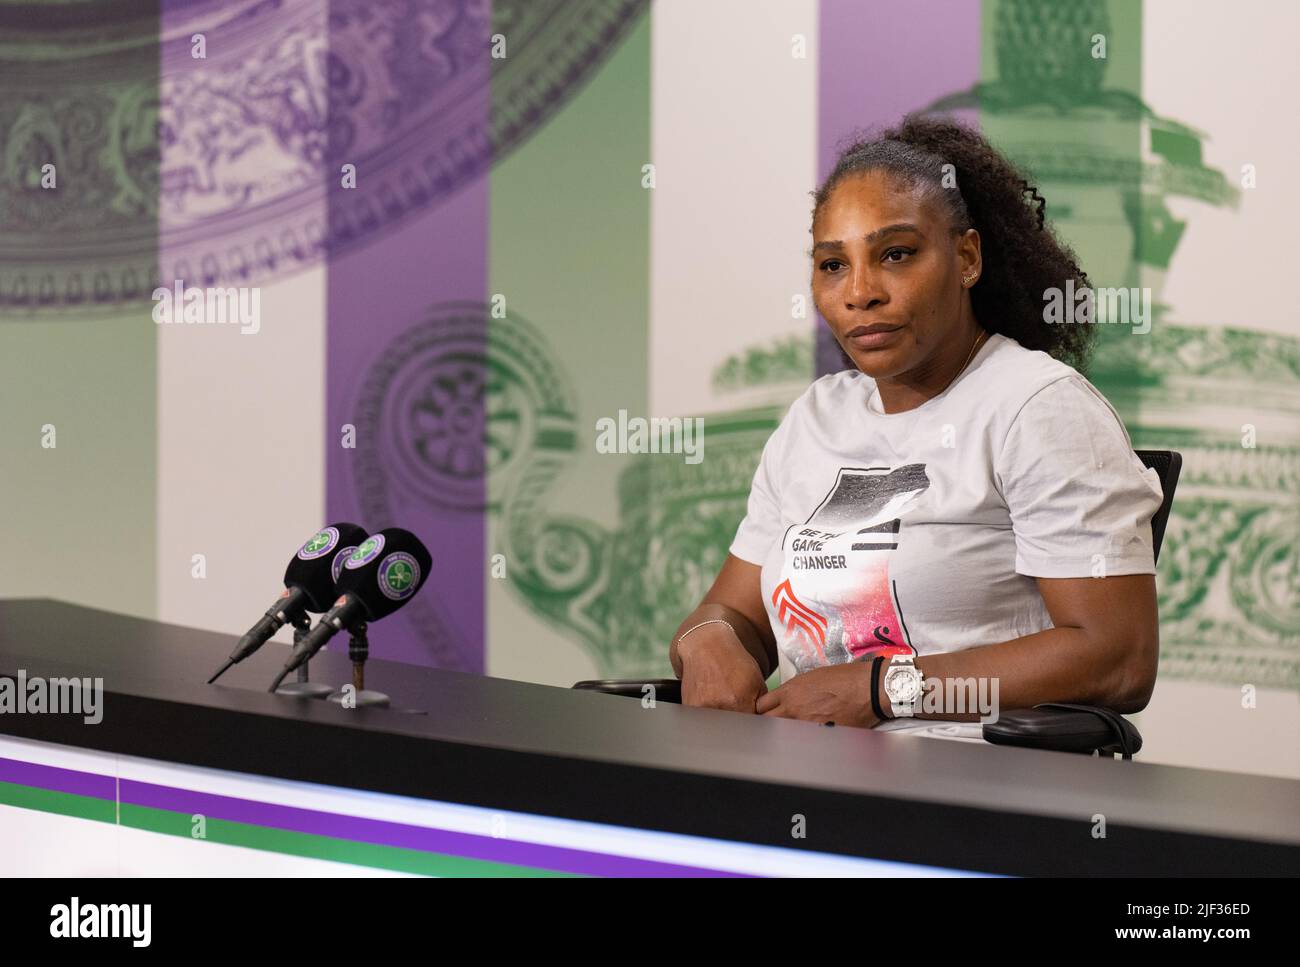 Serena Williams durante una conferenza stampa dopo la sua sconfitta ad Harmony Tan il secondo giorno dei campionati di Wimbledon 2022 all'All England Lawn Tennis and Croquet Club, Wimbledon. Data foto: Martedì 28 giugno 2022. Foto Stock